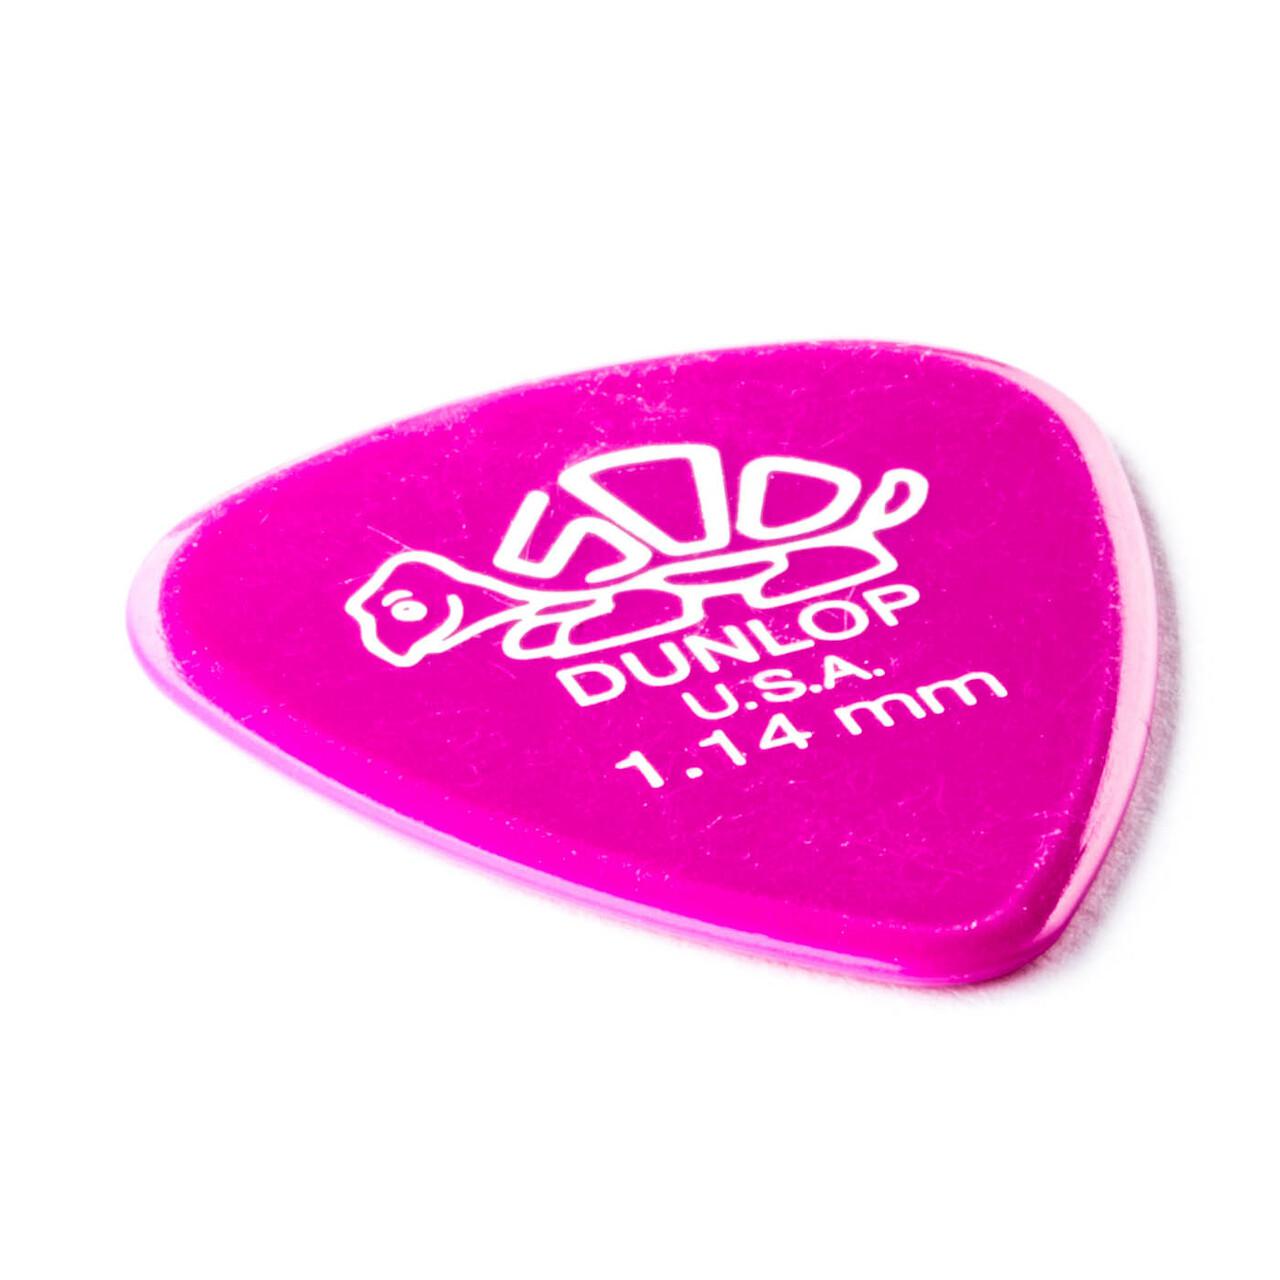 Dunlop - 36 Plumillas Delrin 500, Color: Violeta Calibre: 1.14 Mod.41B1.14_70